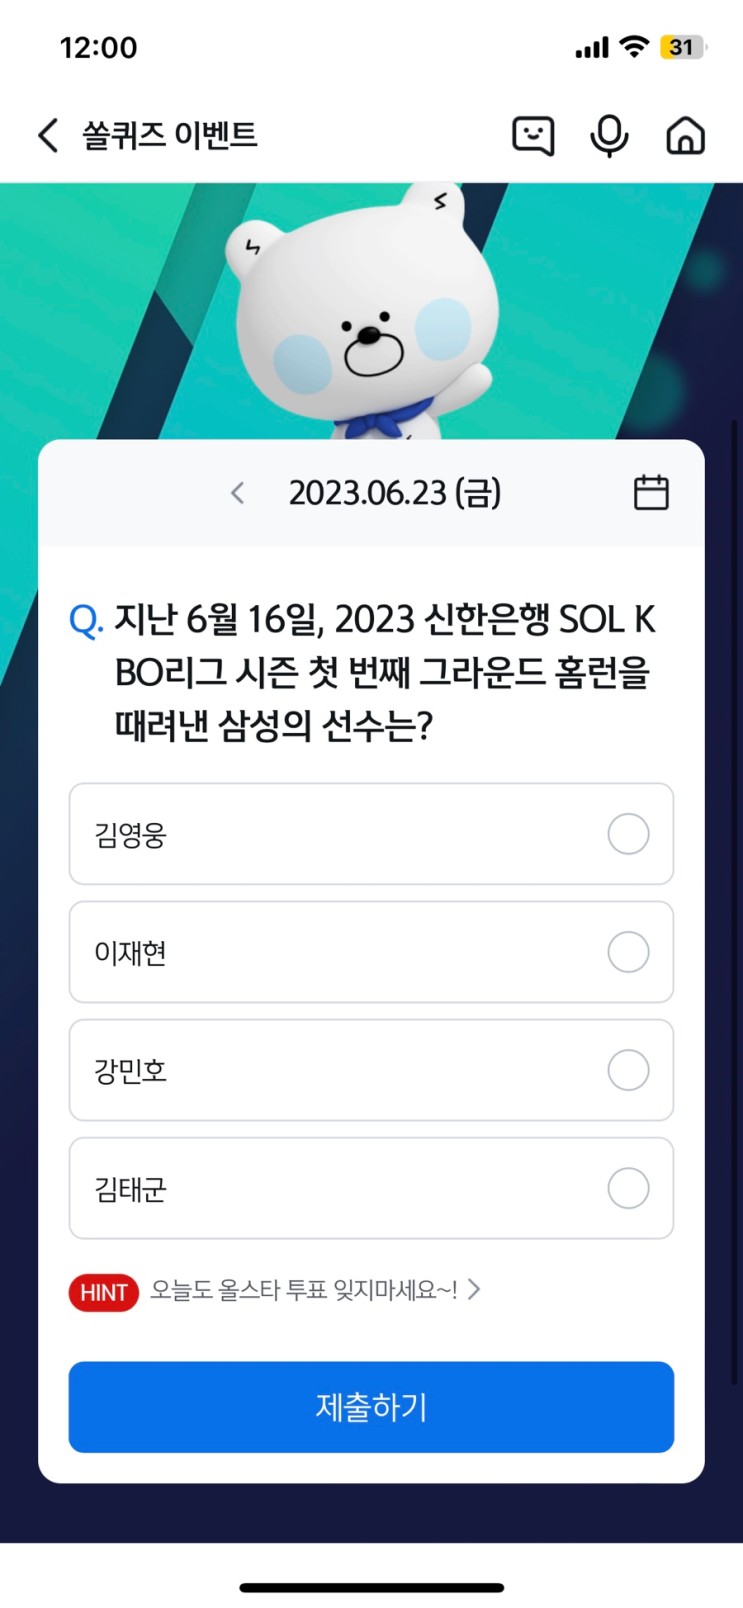 신한 쏠퀴즈(쏠야구) 6월23일 정답 - 지난 6월 16일, 2023 신한은행 SOL KBO리그 시즌 첫 번째 그라운드 홈런을 때려낸 삼성의 선수는?